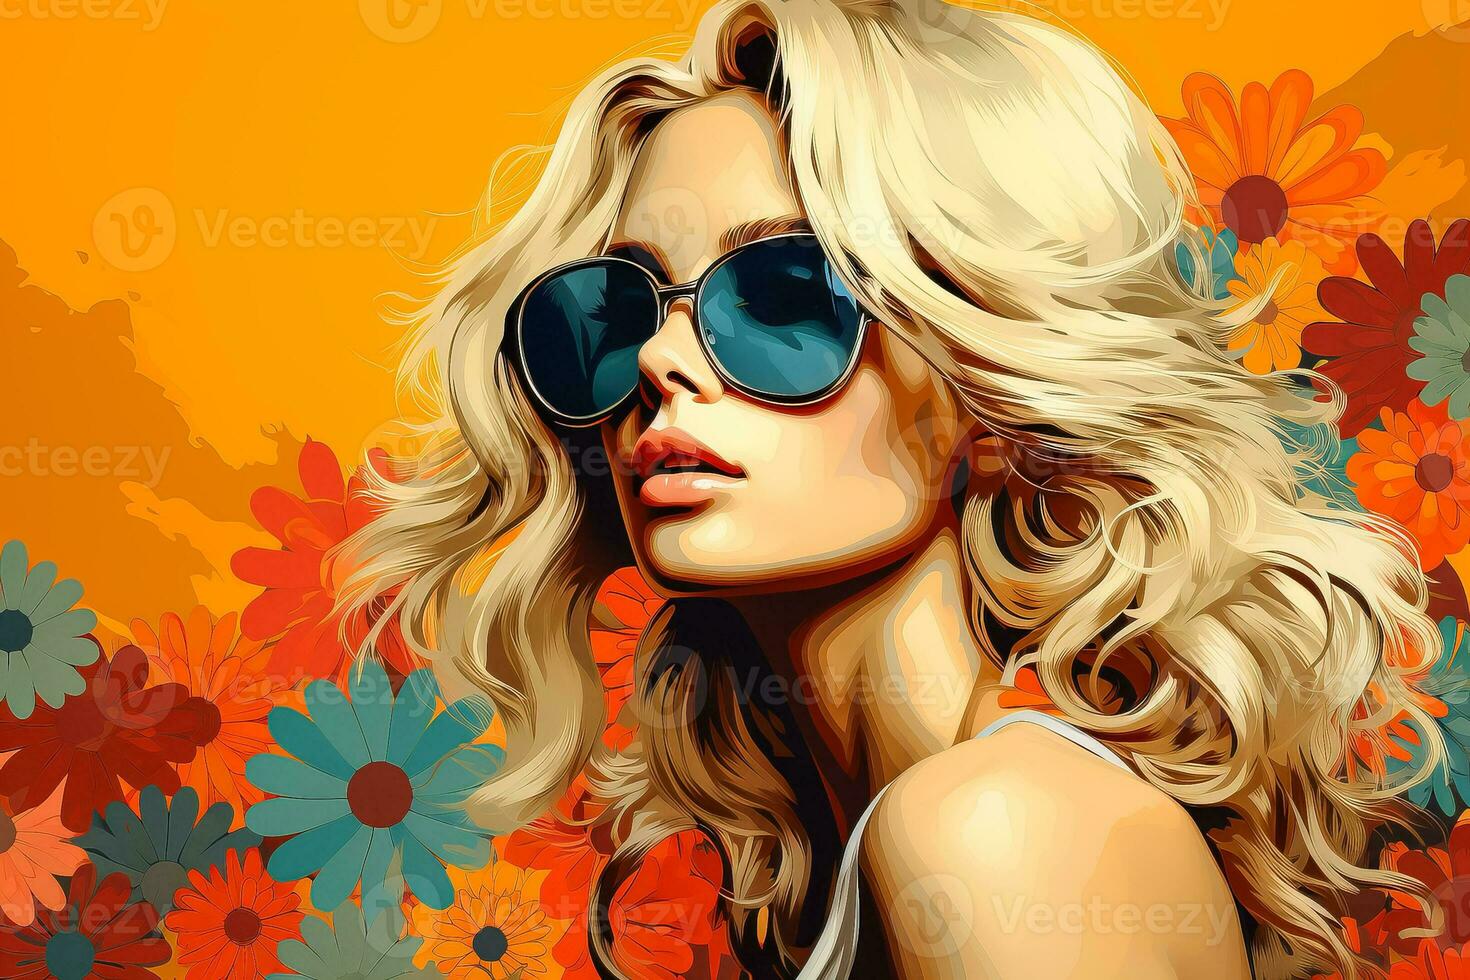 hippie flicka med blond hår och blomma illustration skapas använder sig av pop- konst komisk stil verktyg foto